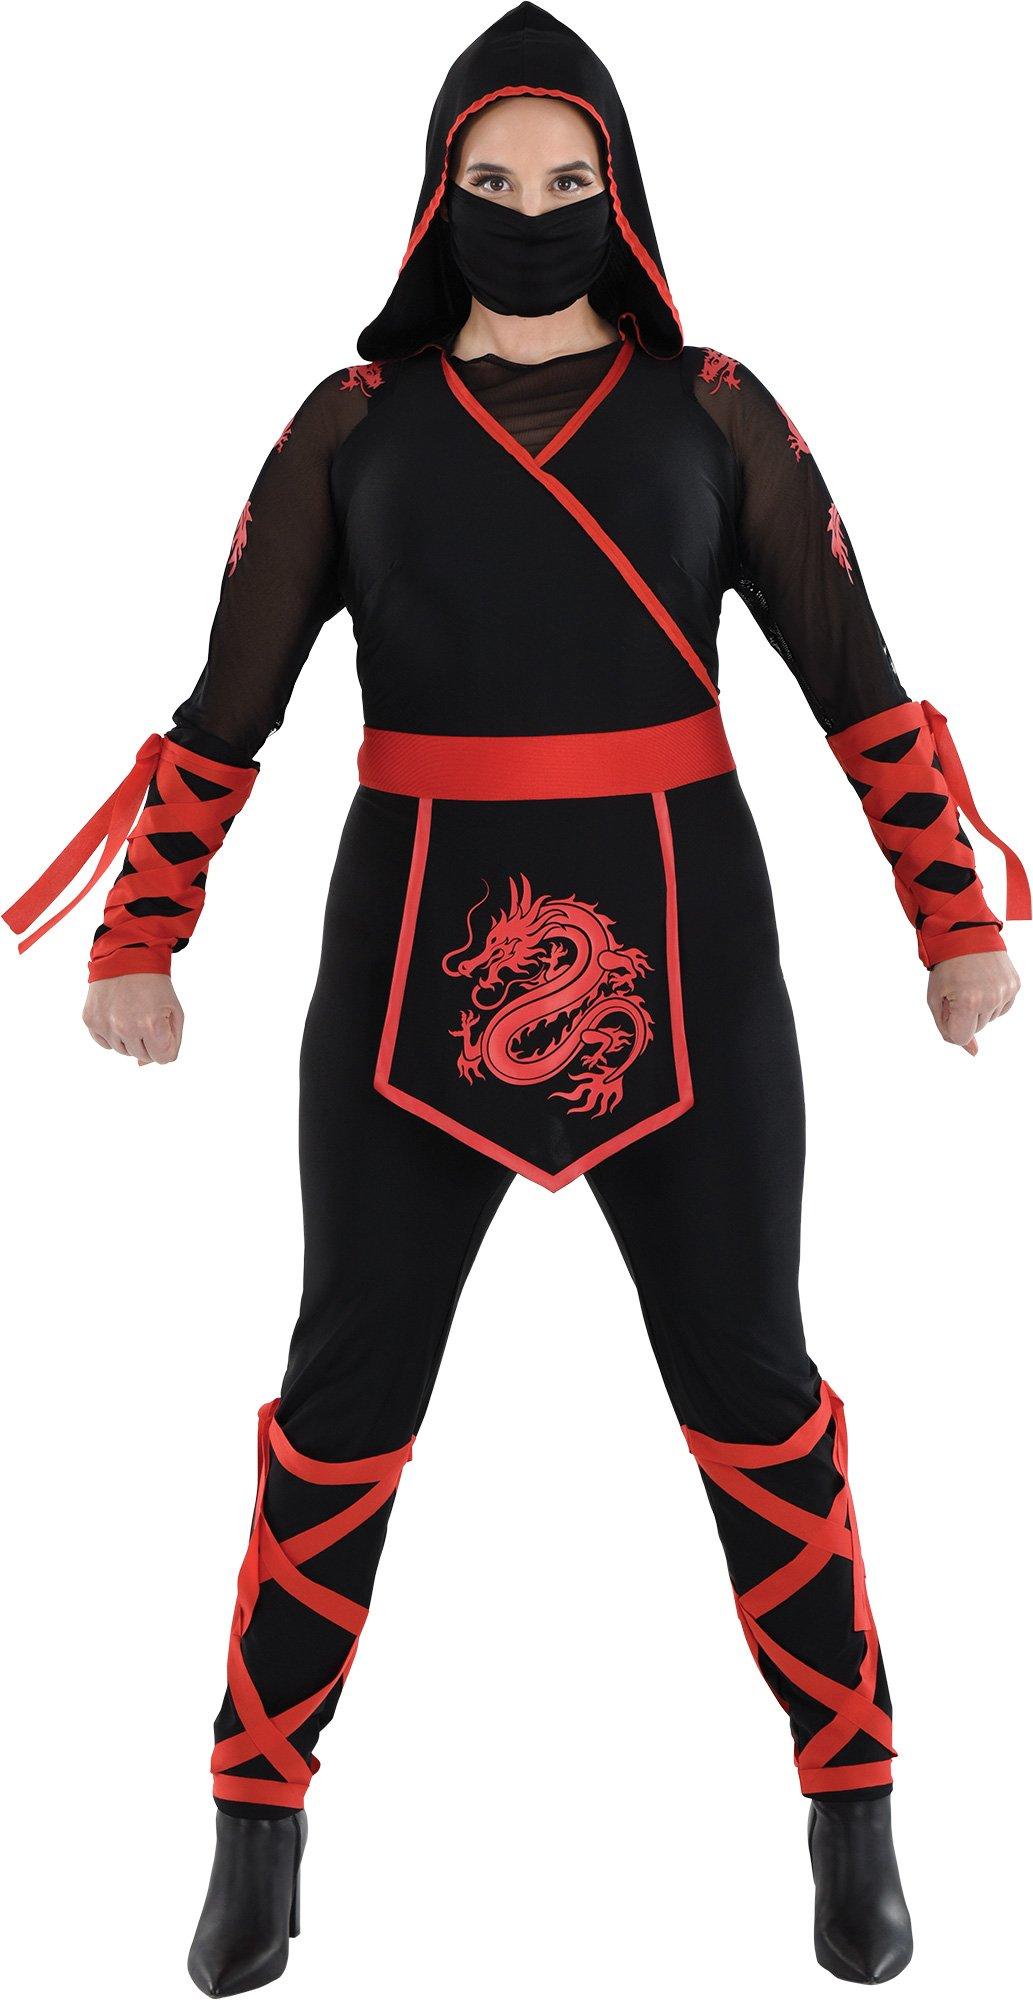 make your own ninja costume